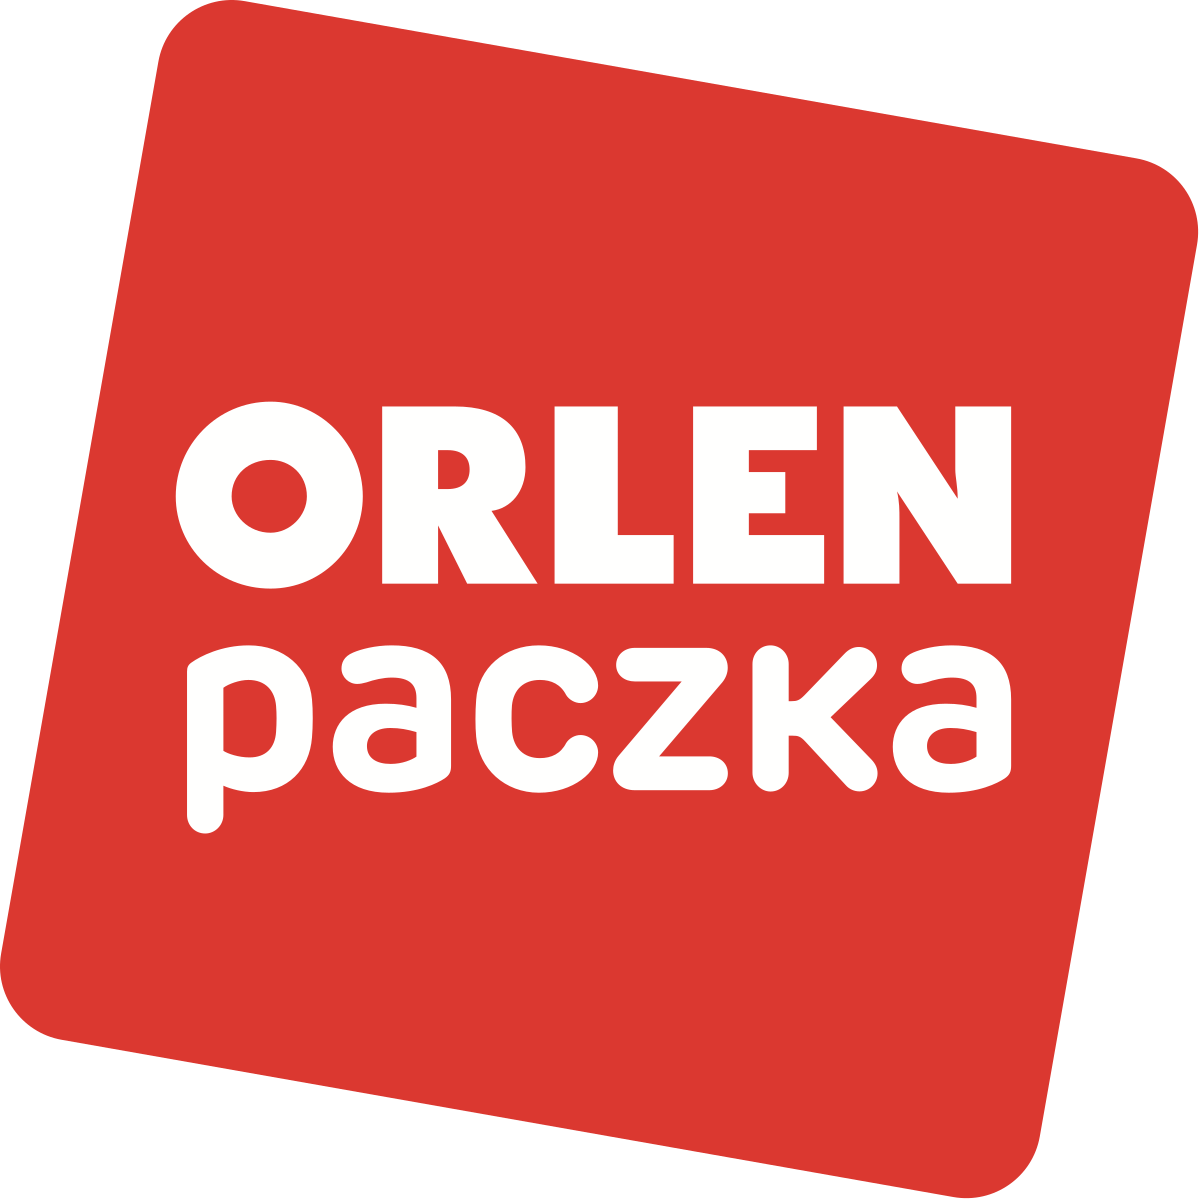 File:Orlen paczka logo.svg - Wikimedia Commons